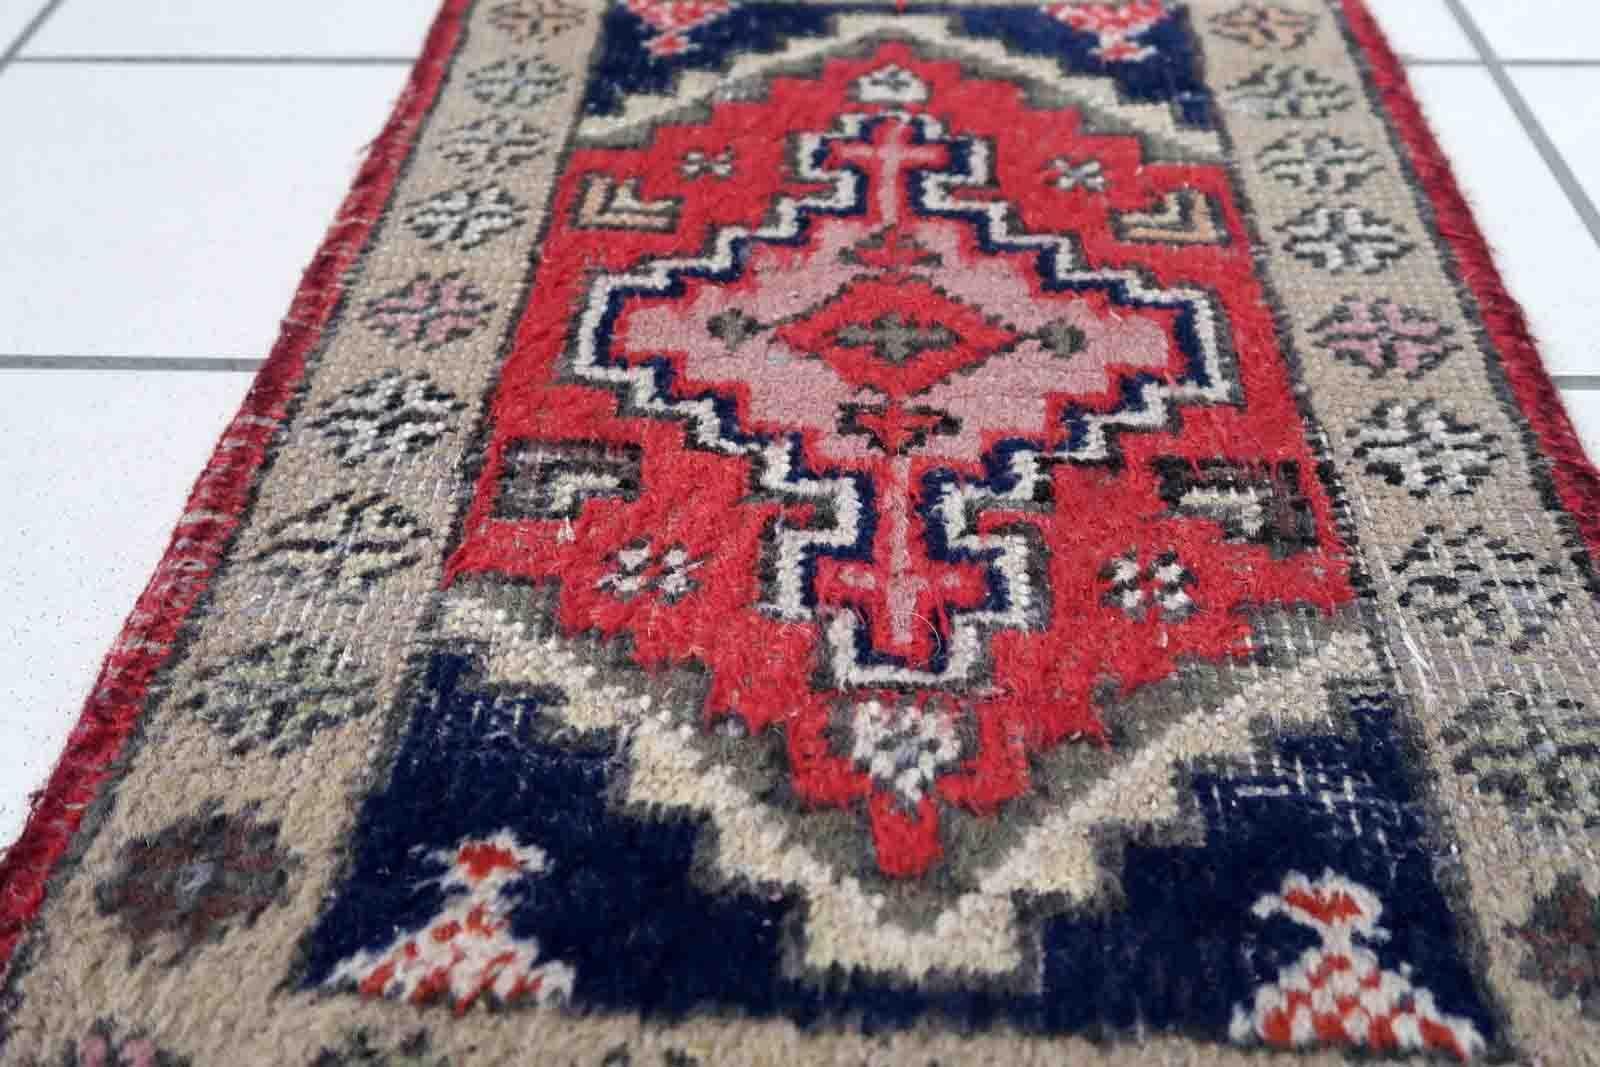 Handgefertigter Vintage-Teppich aus dem Nahen Osten mit traditionellem Medaillonmuster. Der Teppich wurde Ende des 20. Jahrhunderts aus Wolle hergestellt. Es ist im Originalzustand, hat einige niedrige Flor.

-zustand: original, etwas niedriger